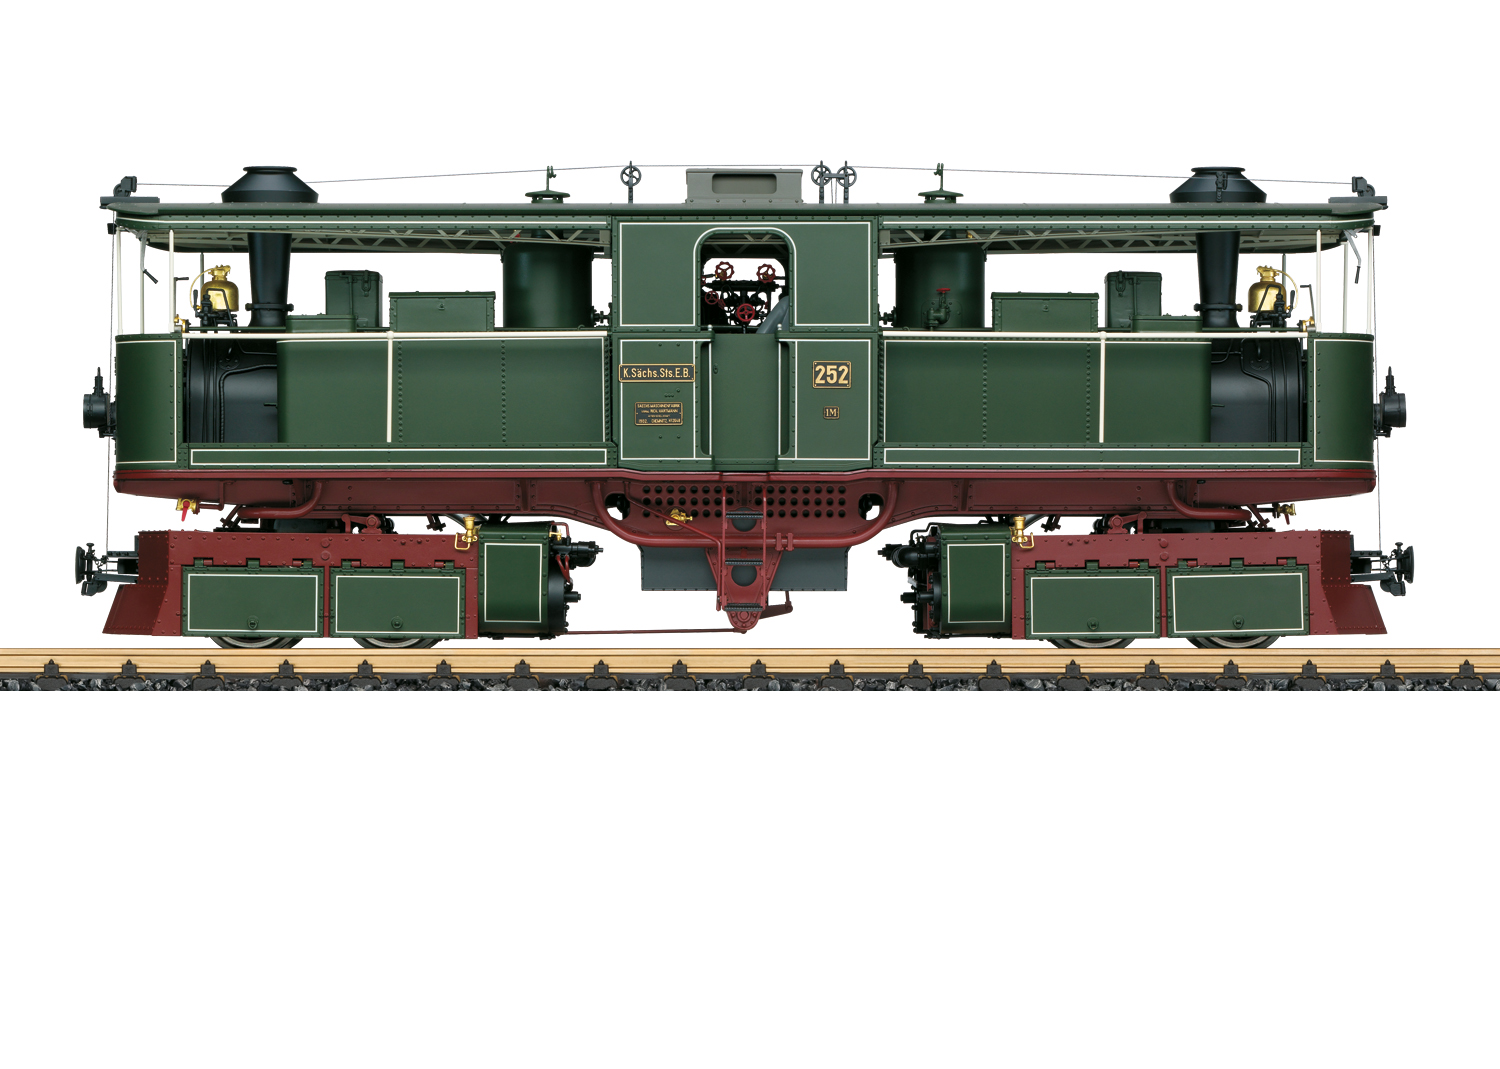 K. Sächs Sts.E.B Dampflok Ep1 Fairlie Dampflok Baureihe I M, grün, einmalige Auflage anlässlich dem 120. Geburtstag dieser Lok